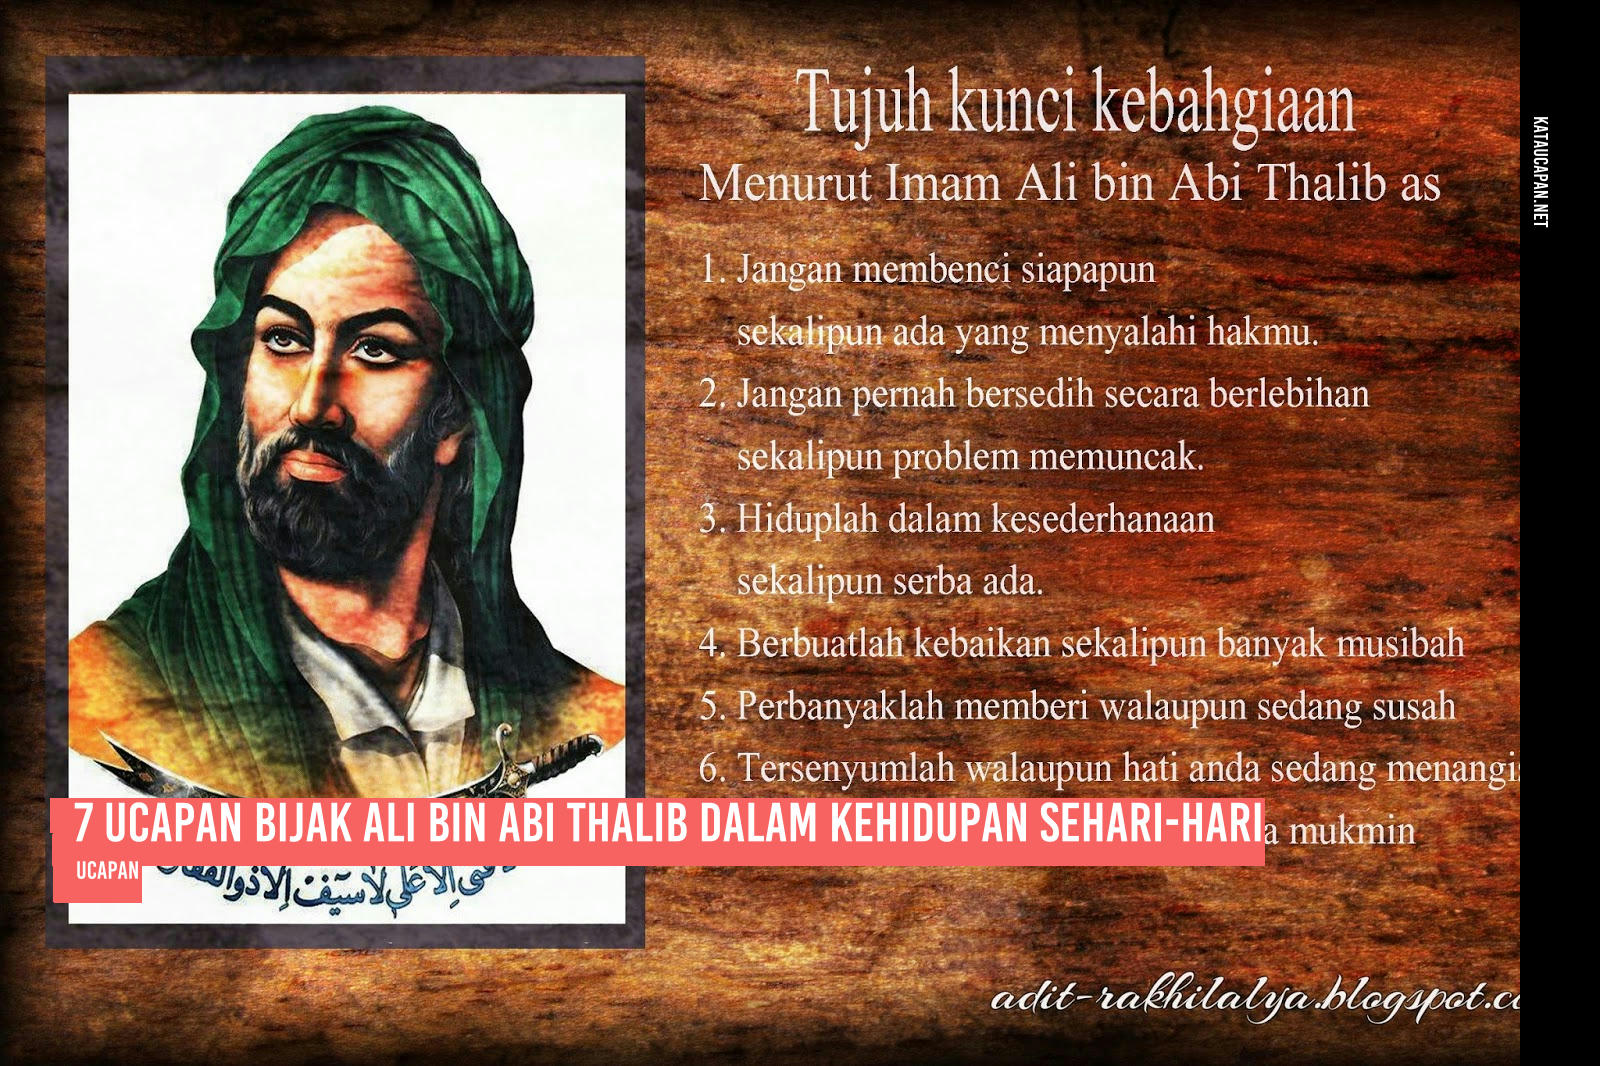 7 Ucapan Bijak Ali Bin Abi Thalib dalam Kehidupan Sehari-hari